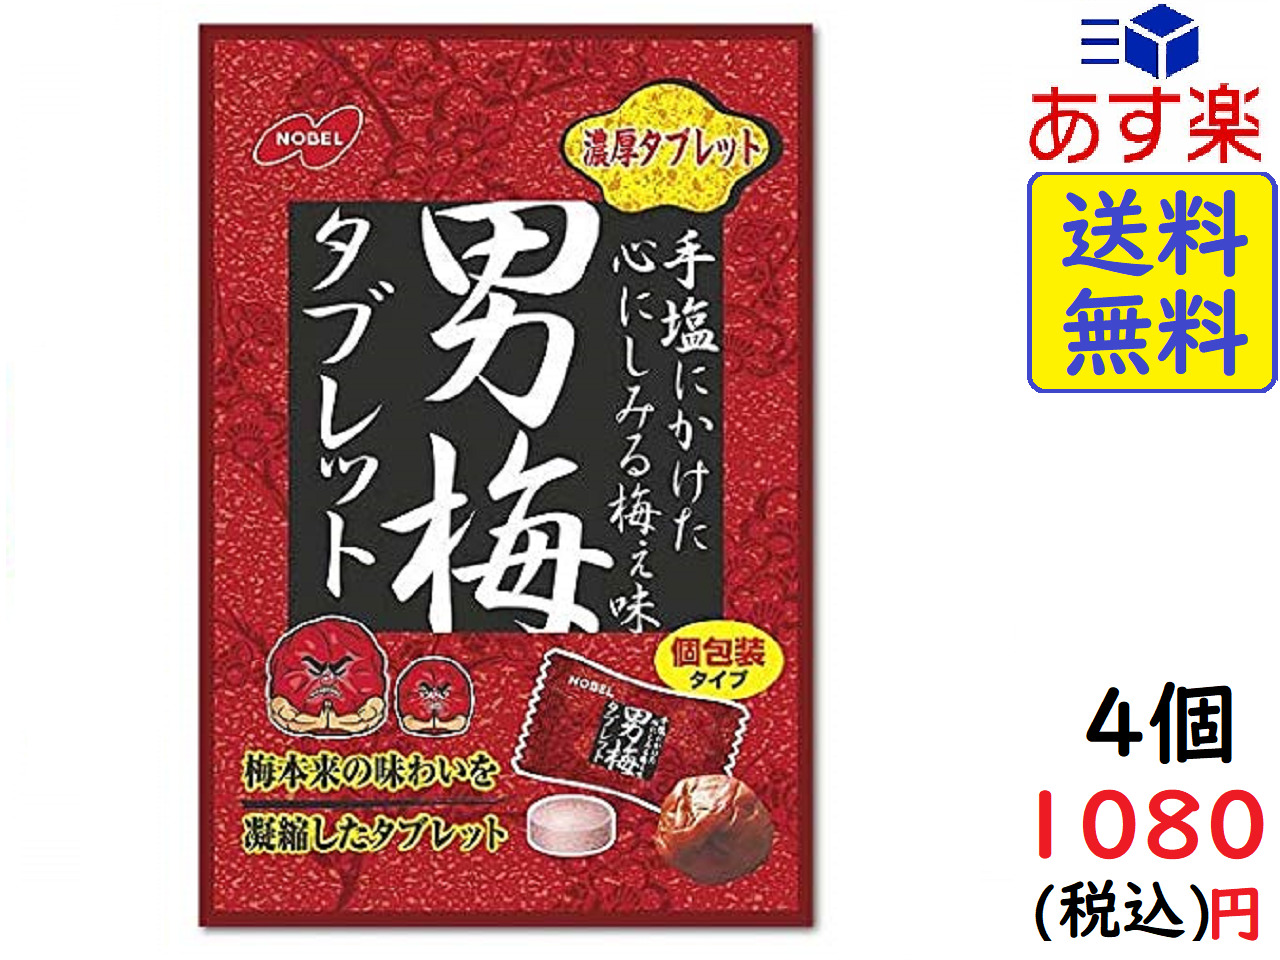 楽天市場 ノーベル 男梅 タブレット 55g 4袋 賞味期限21 07 Exicoast Internet Store 2号店